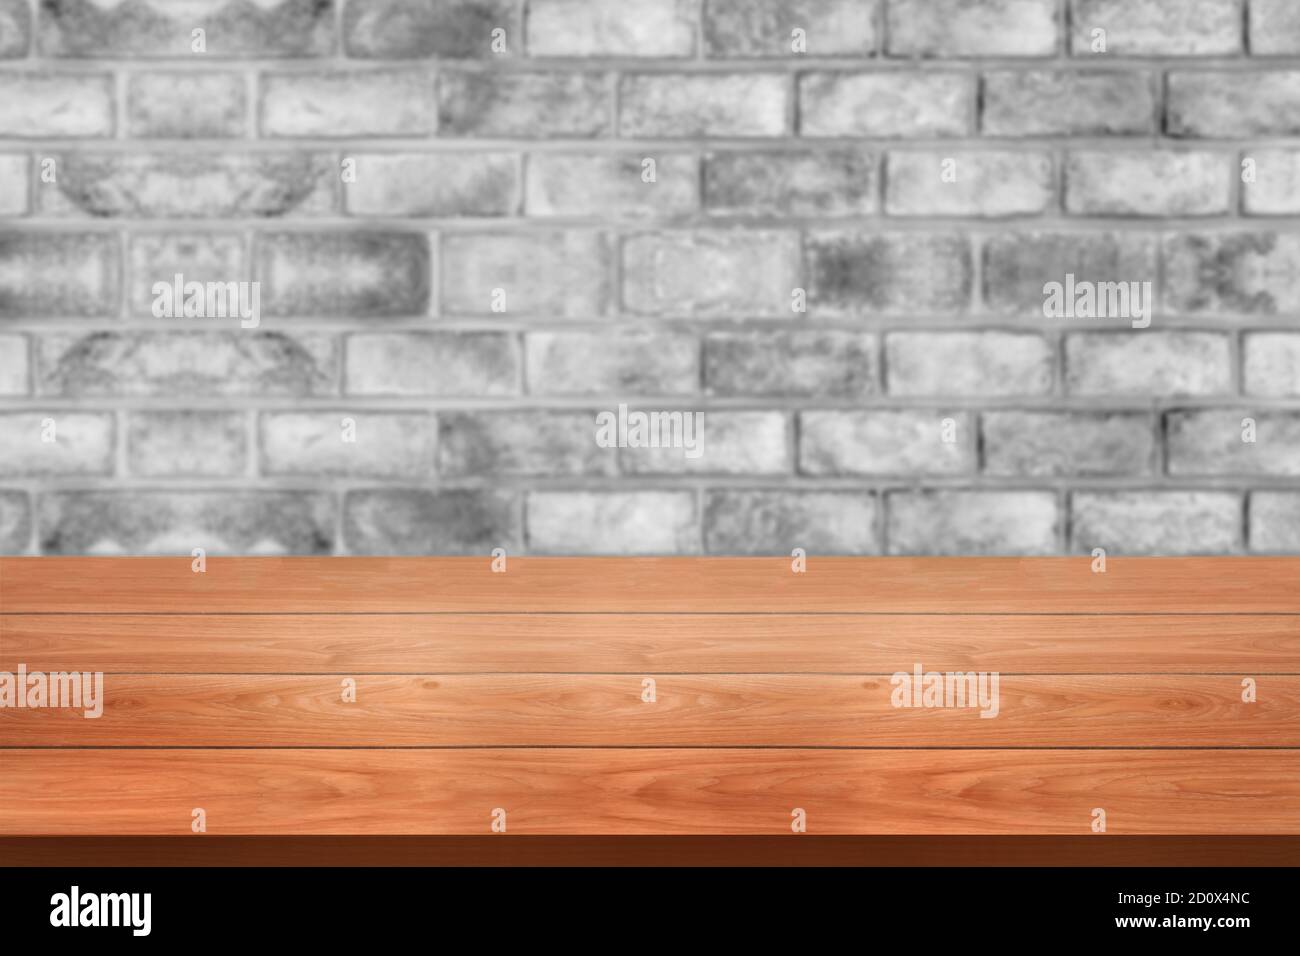 Holztisch vor rustikalen Backstein Wand verwischen Hintergrund mit leeren Kopieplatz auf dem Tisch für Produkt-Display Mockup. Montage im Retro-Design Stockfoto